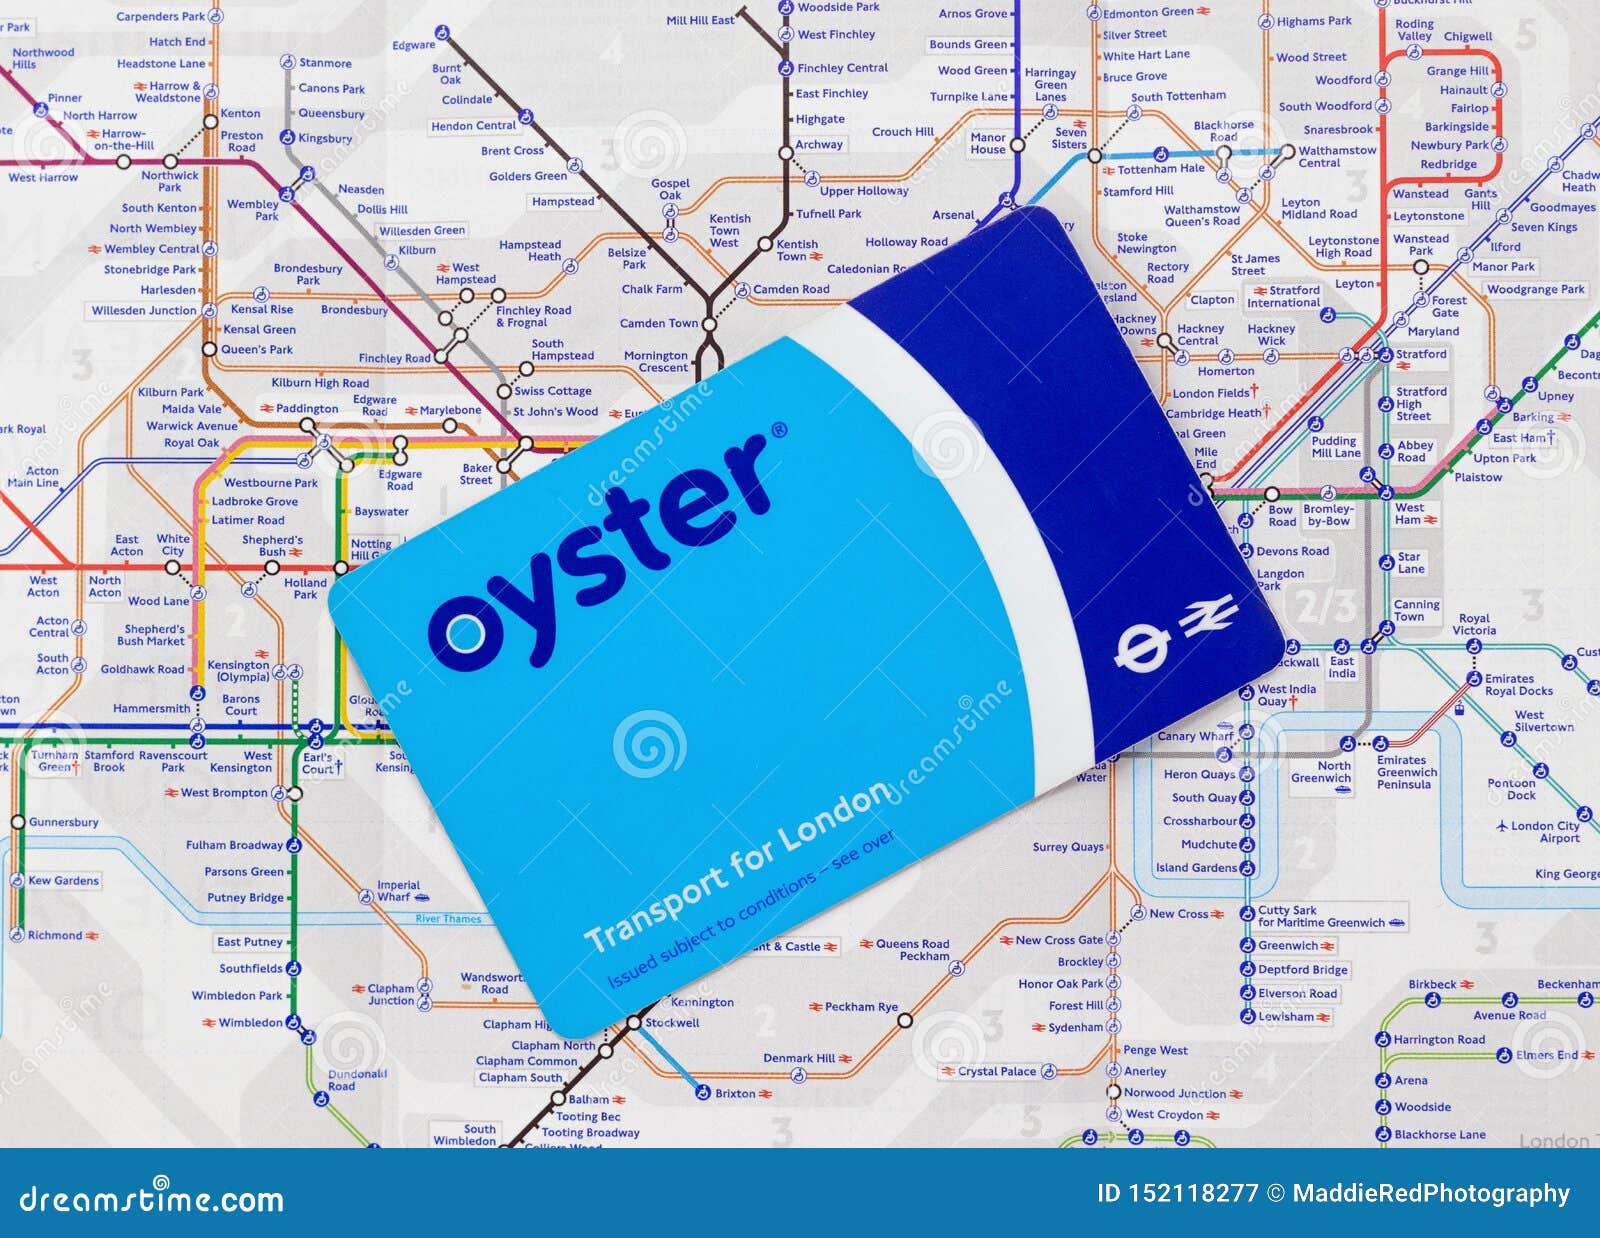 underground travel card london